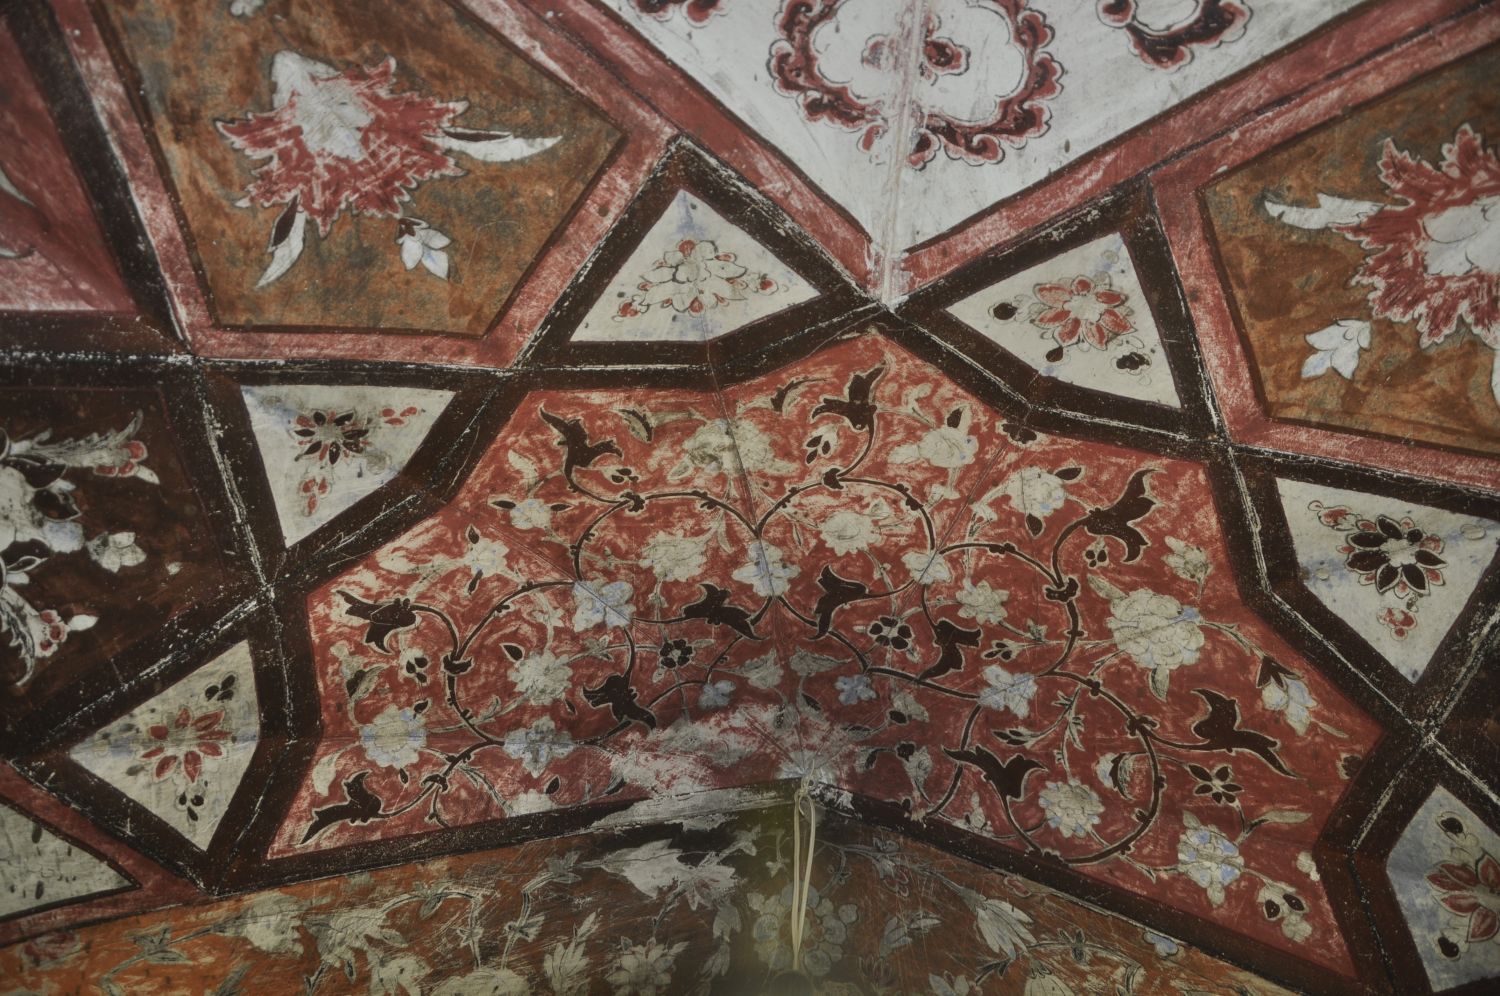 Damaged painting in karbandi.